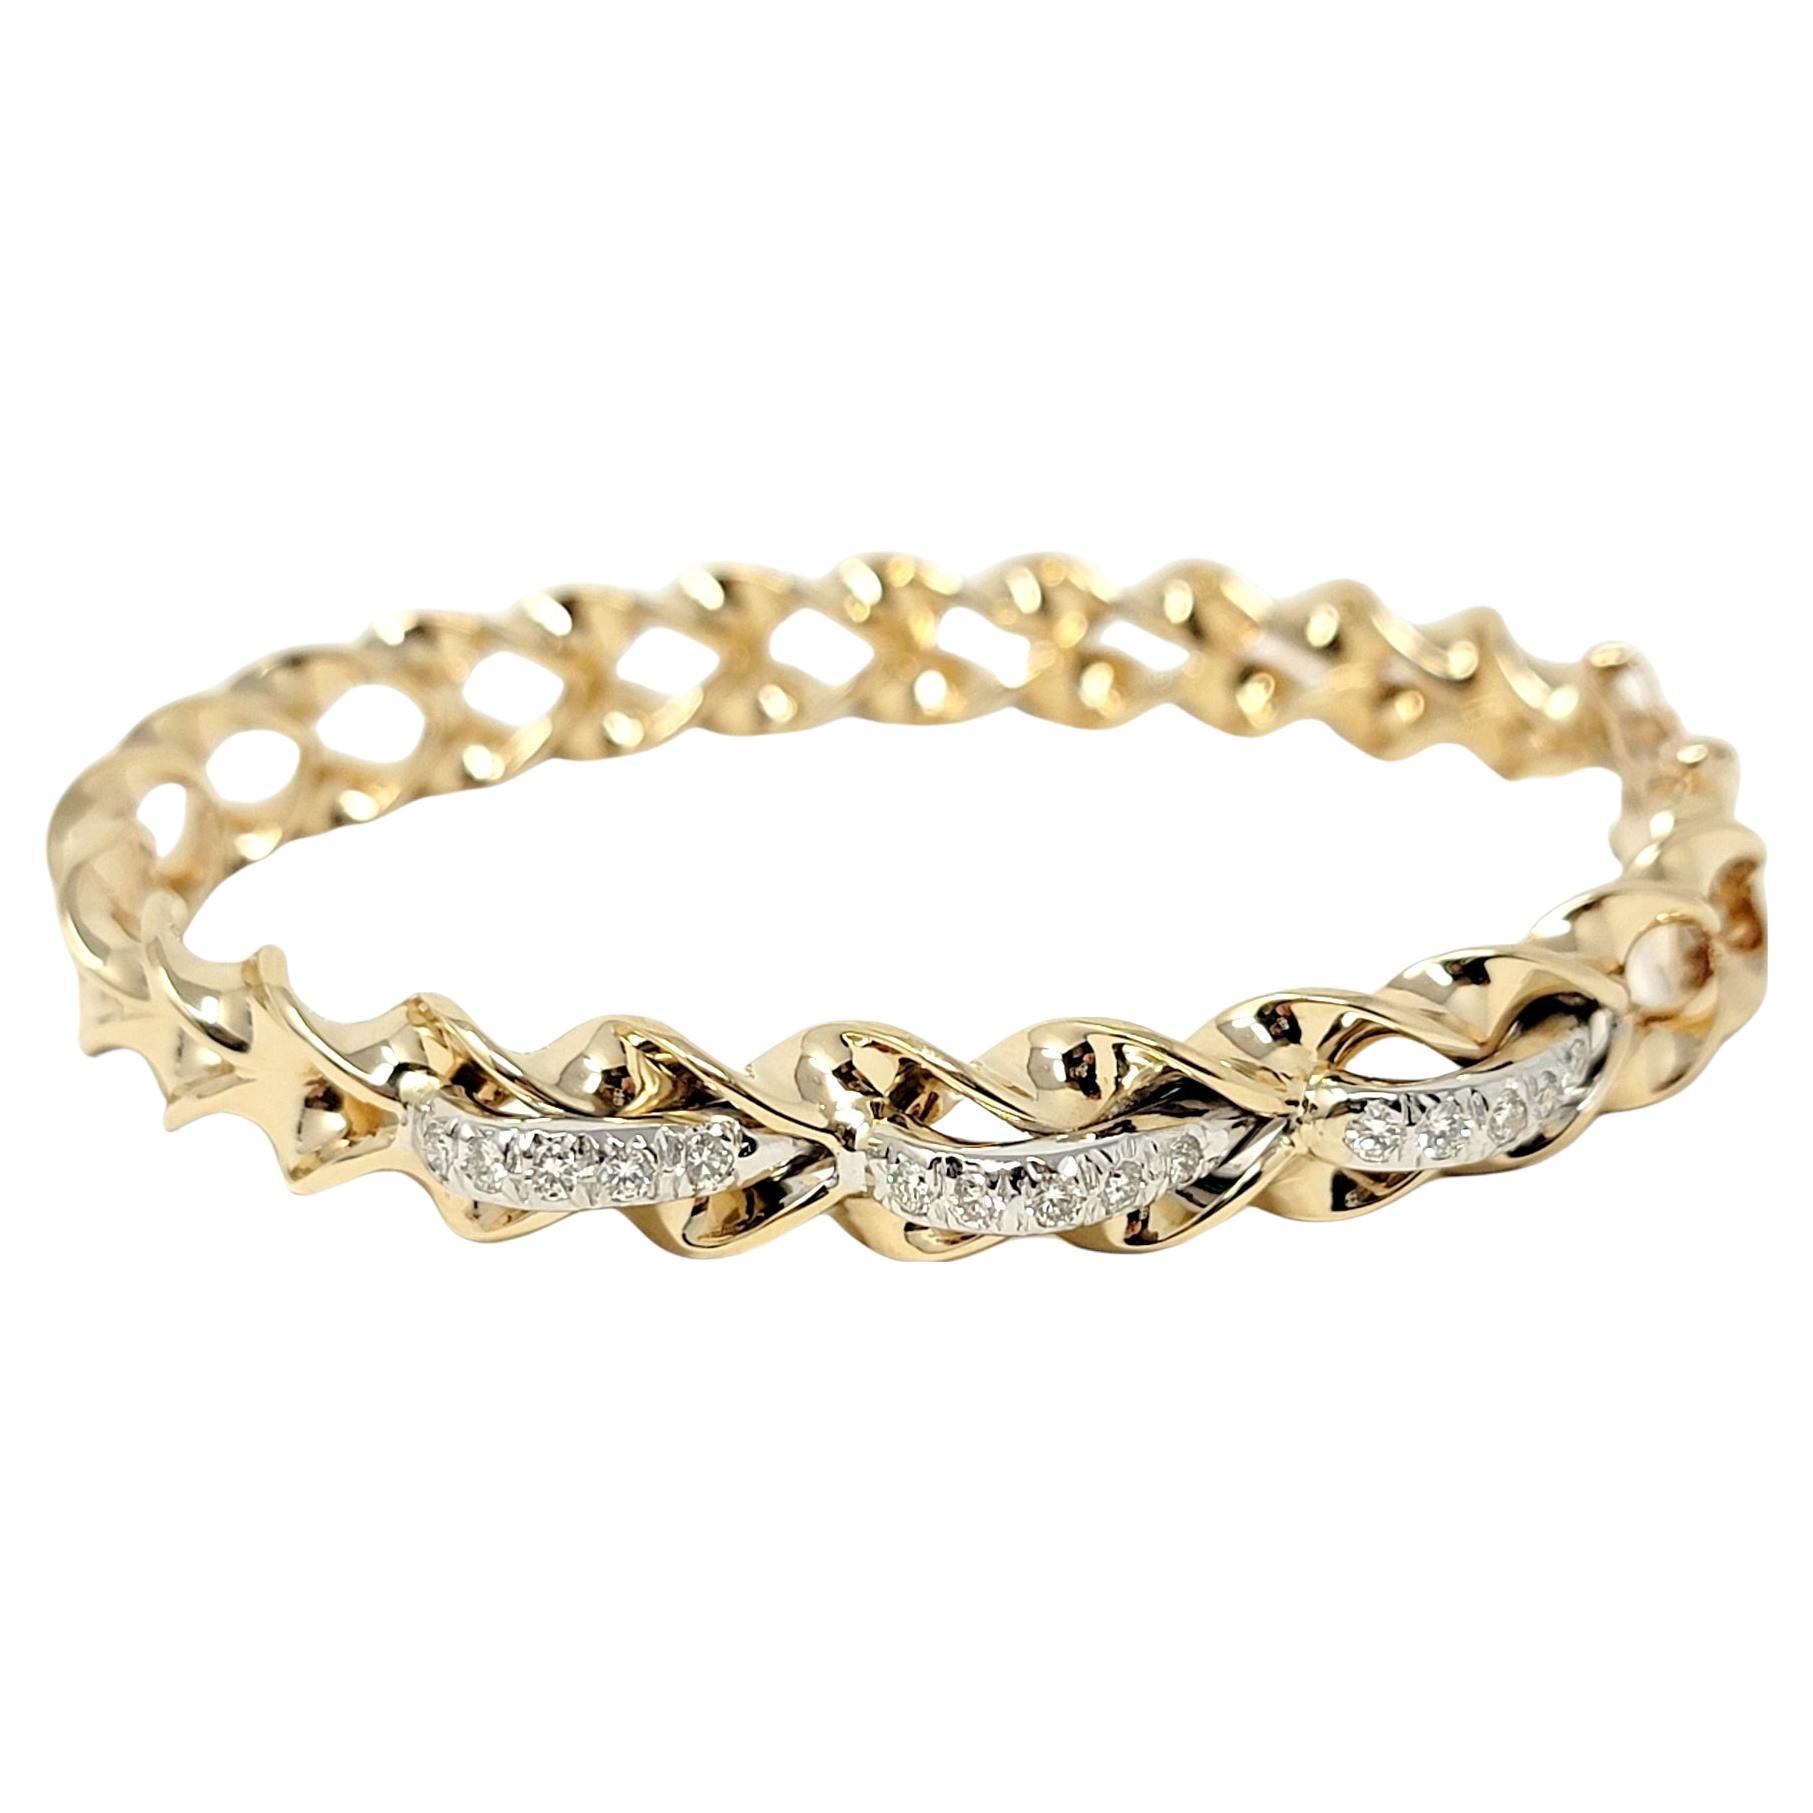 Bracelet bangle contemporain au design unique, avec une vague de diamants. Ce magnifique bracelet est fabriqué en or jaune 14 carats poli et comporte une ouverture latérale à charnière. La moitié supérieure du bracelet présente un design moderne en